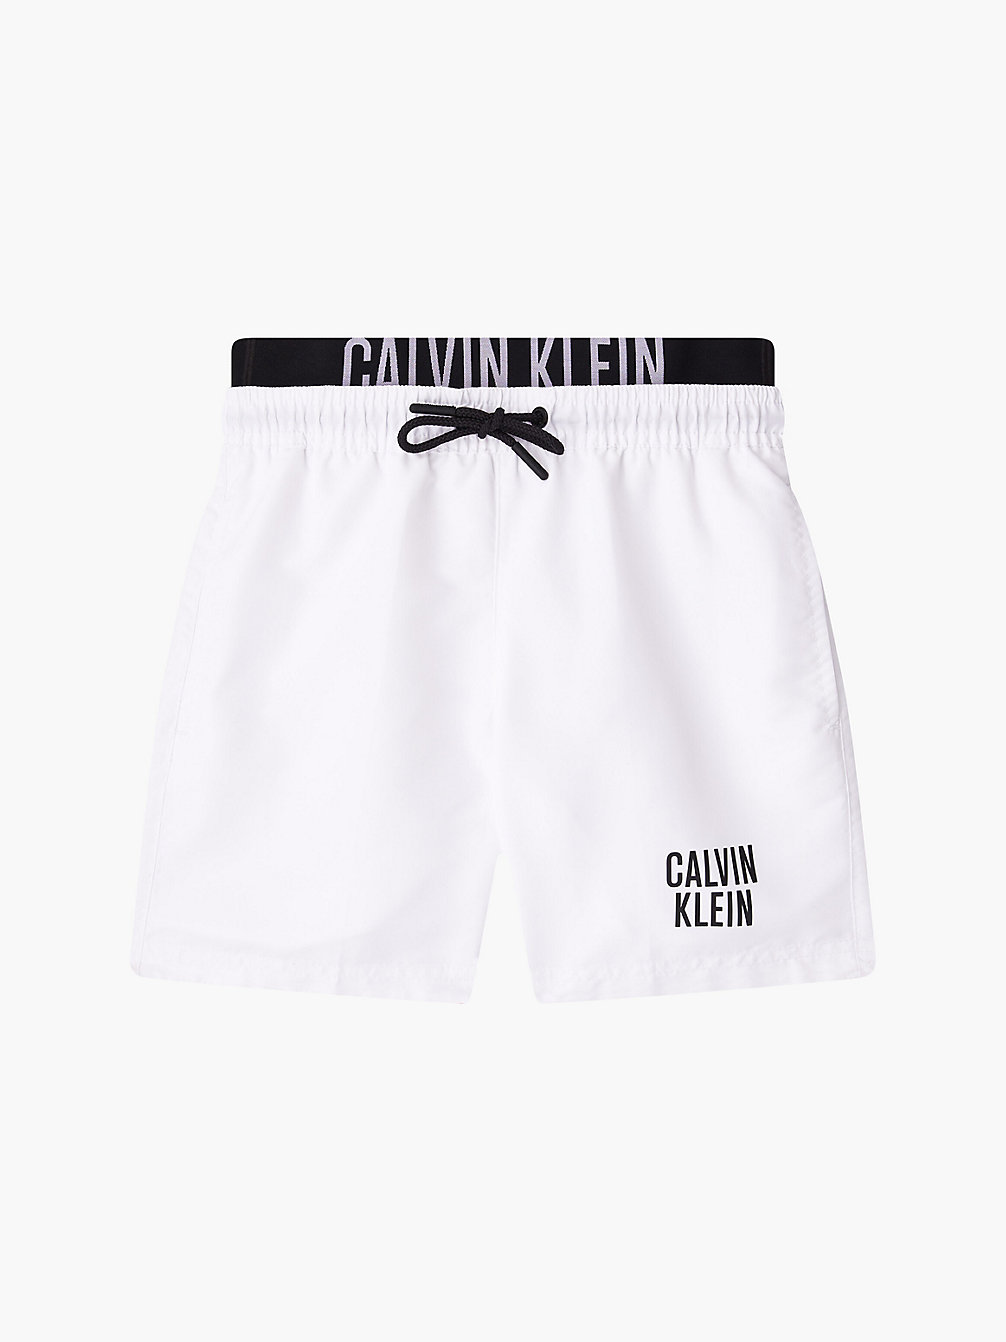 PVH CLASSIC WHITE Badeshorts Für Jungen - Intense Power undefined boys Calvin Klein